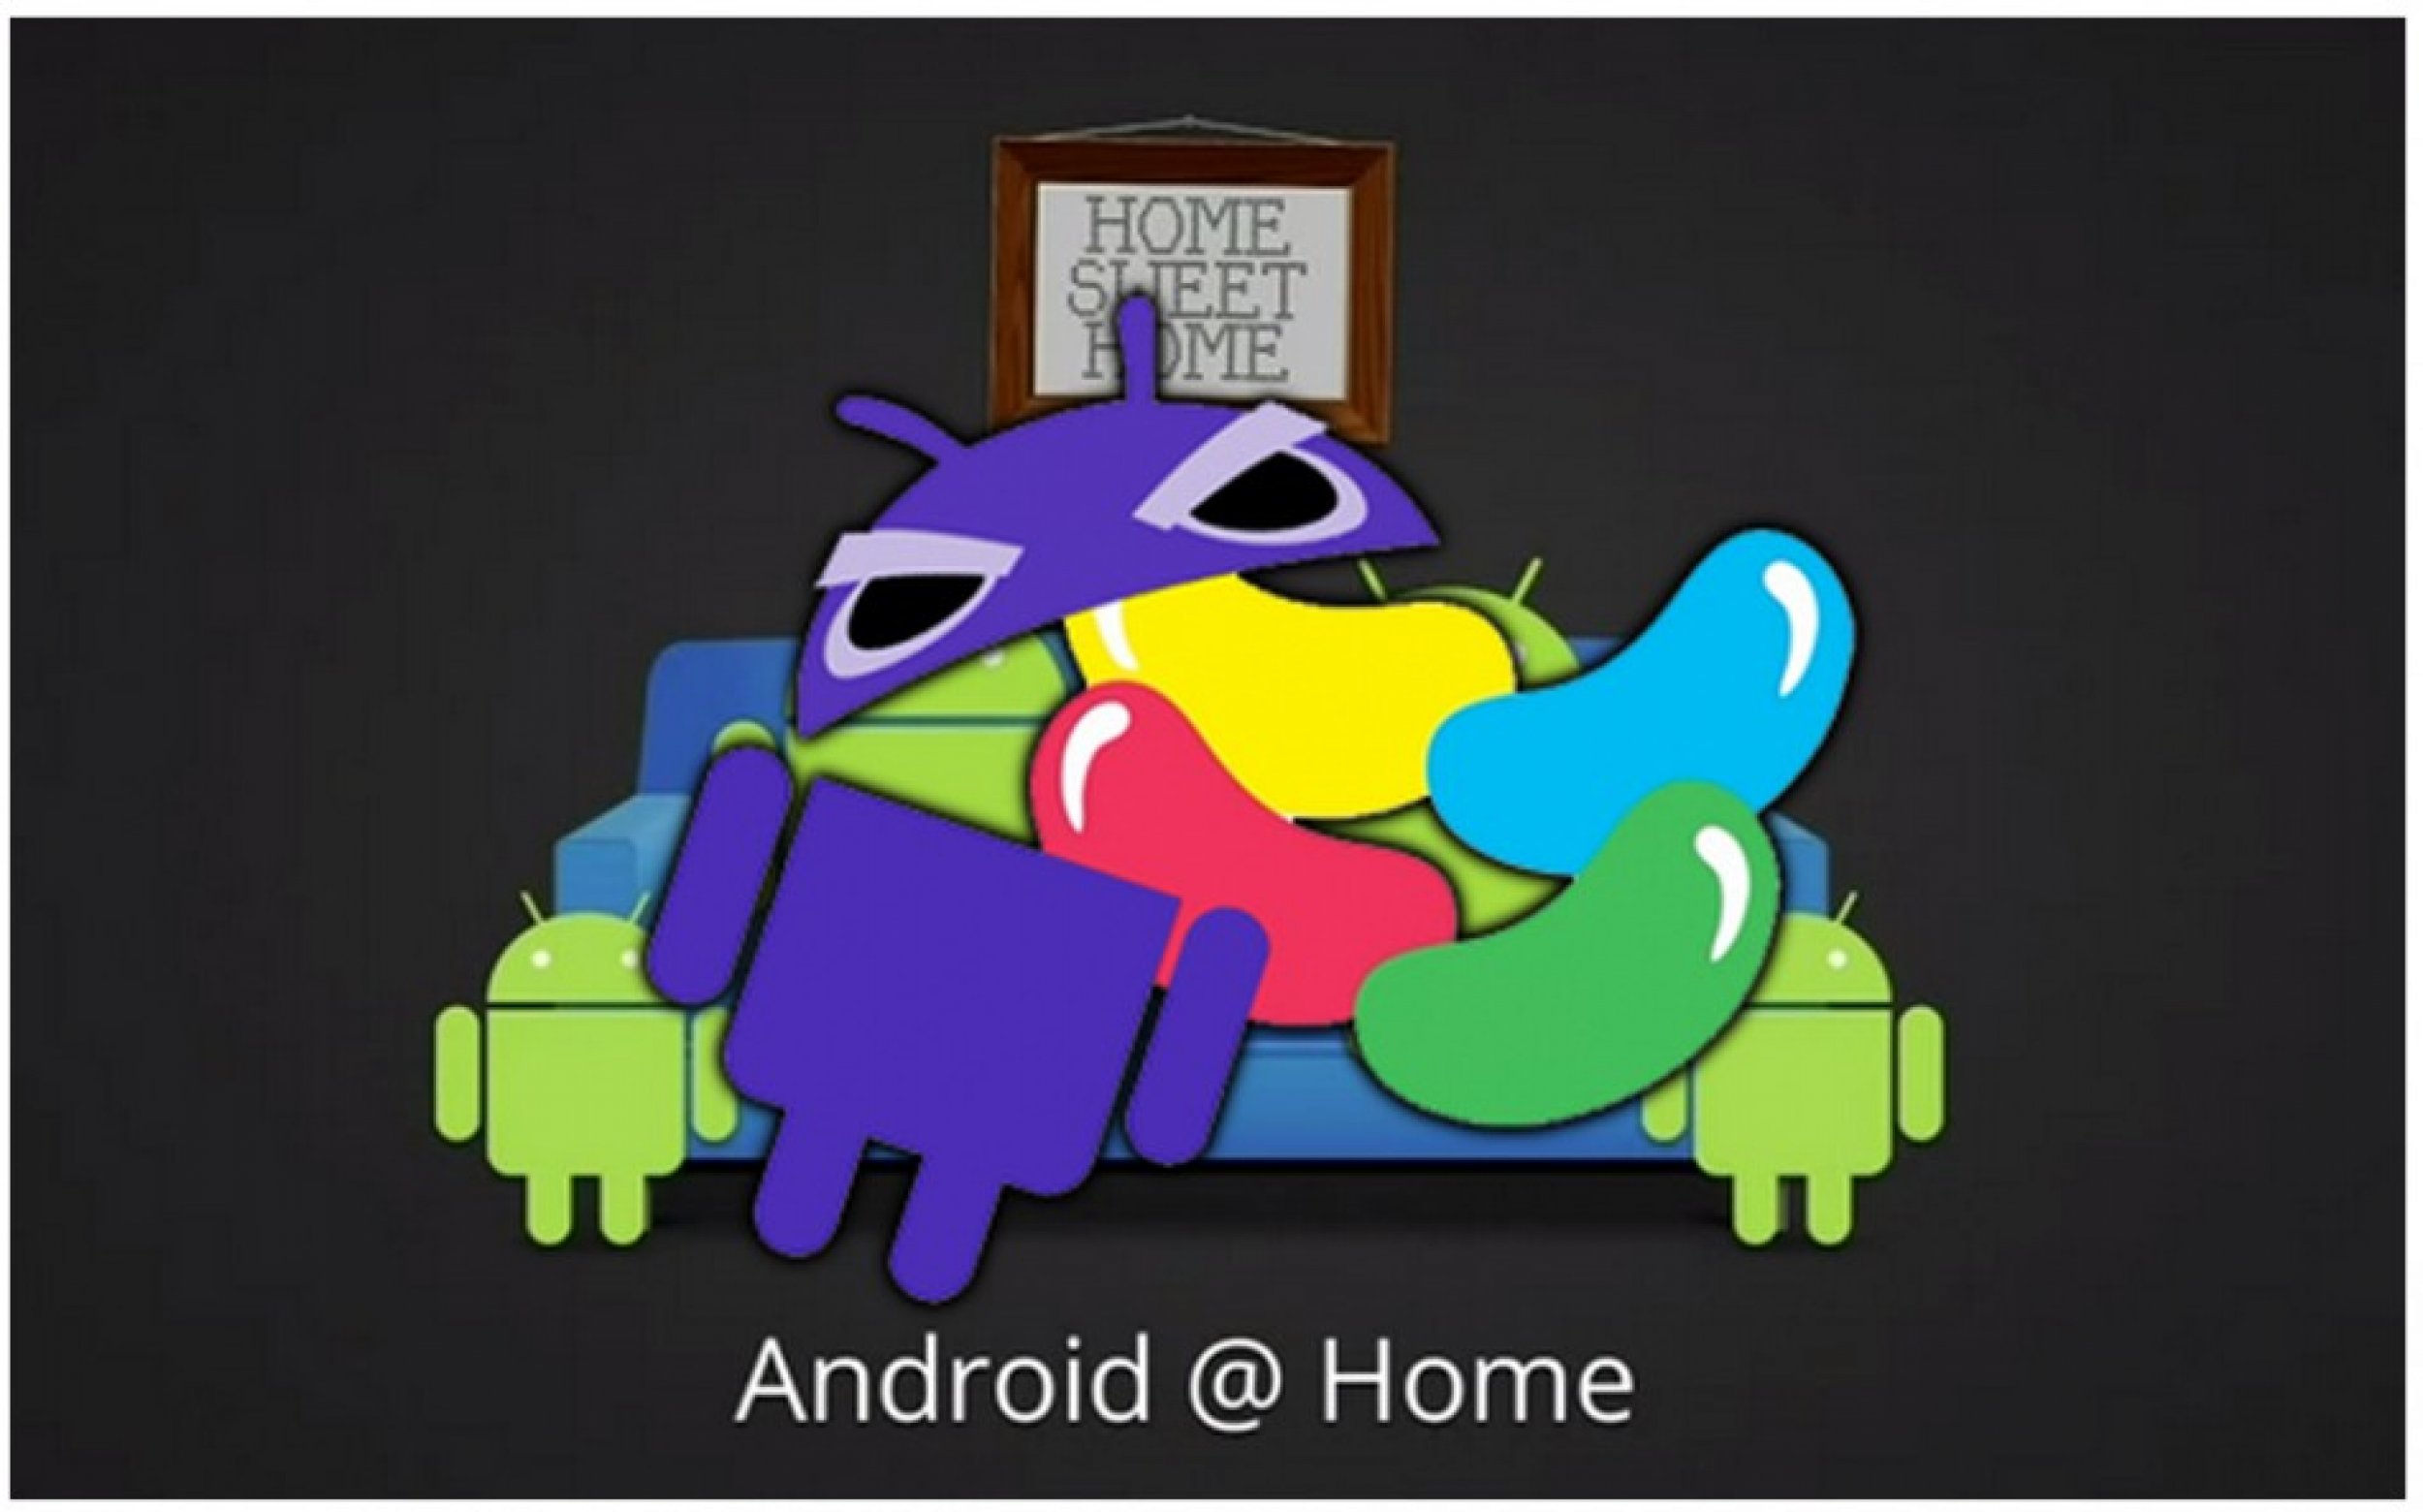 Google Jelly Bean Mobile OS